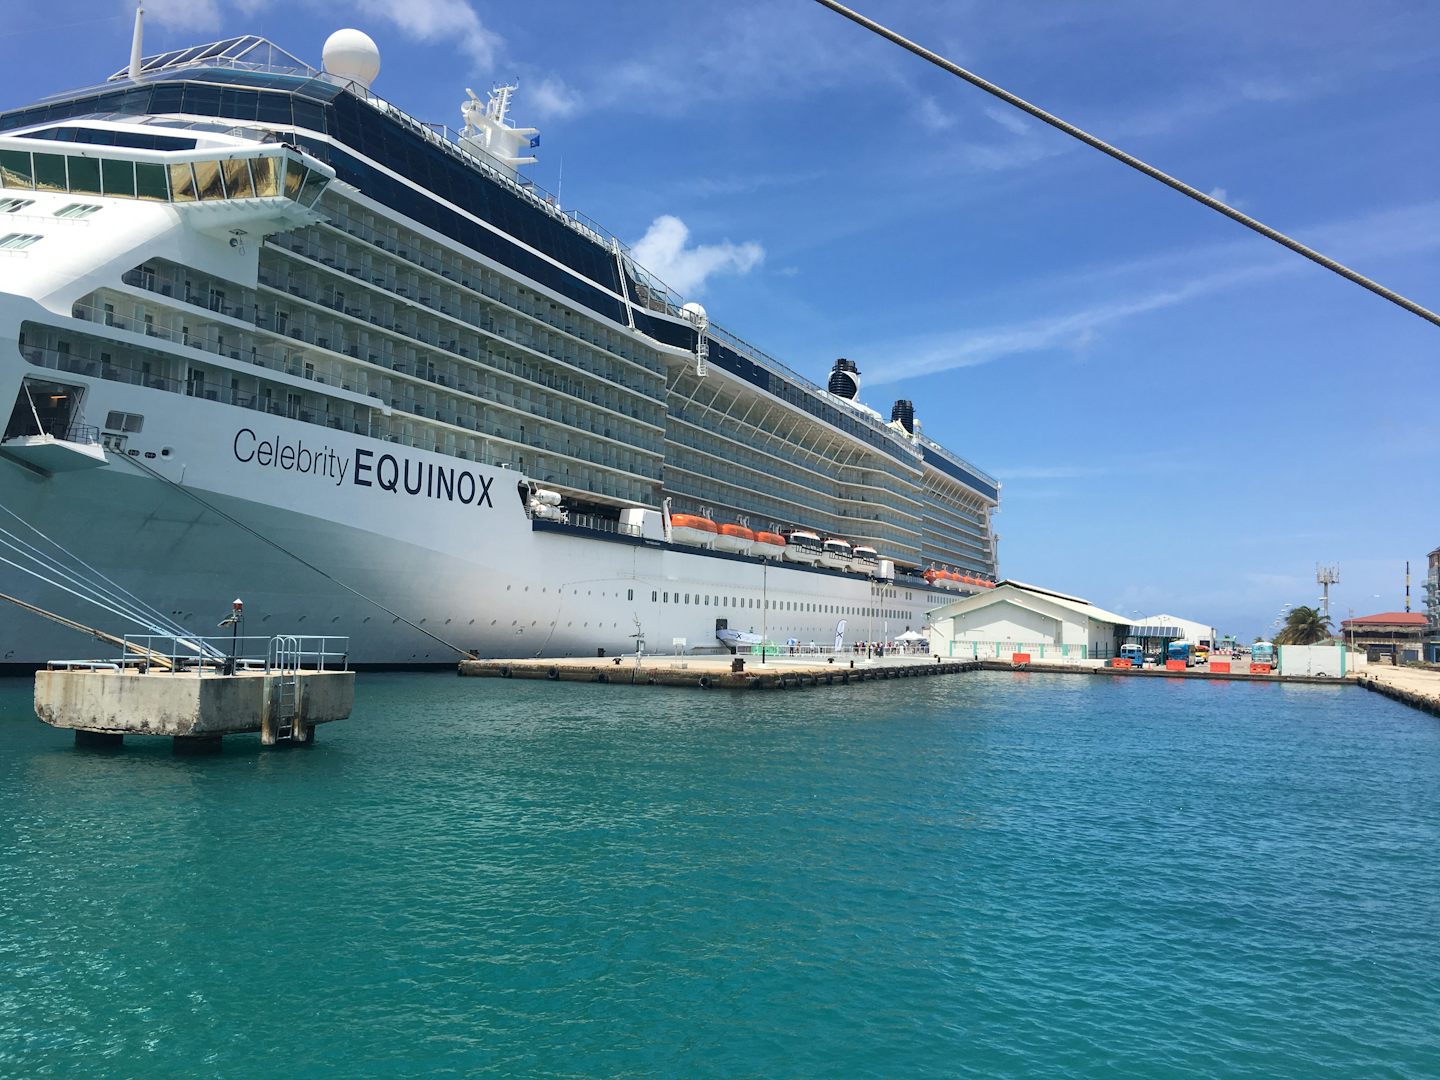 Equinox docked in Bonaire